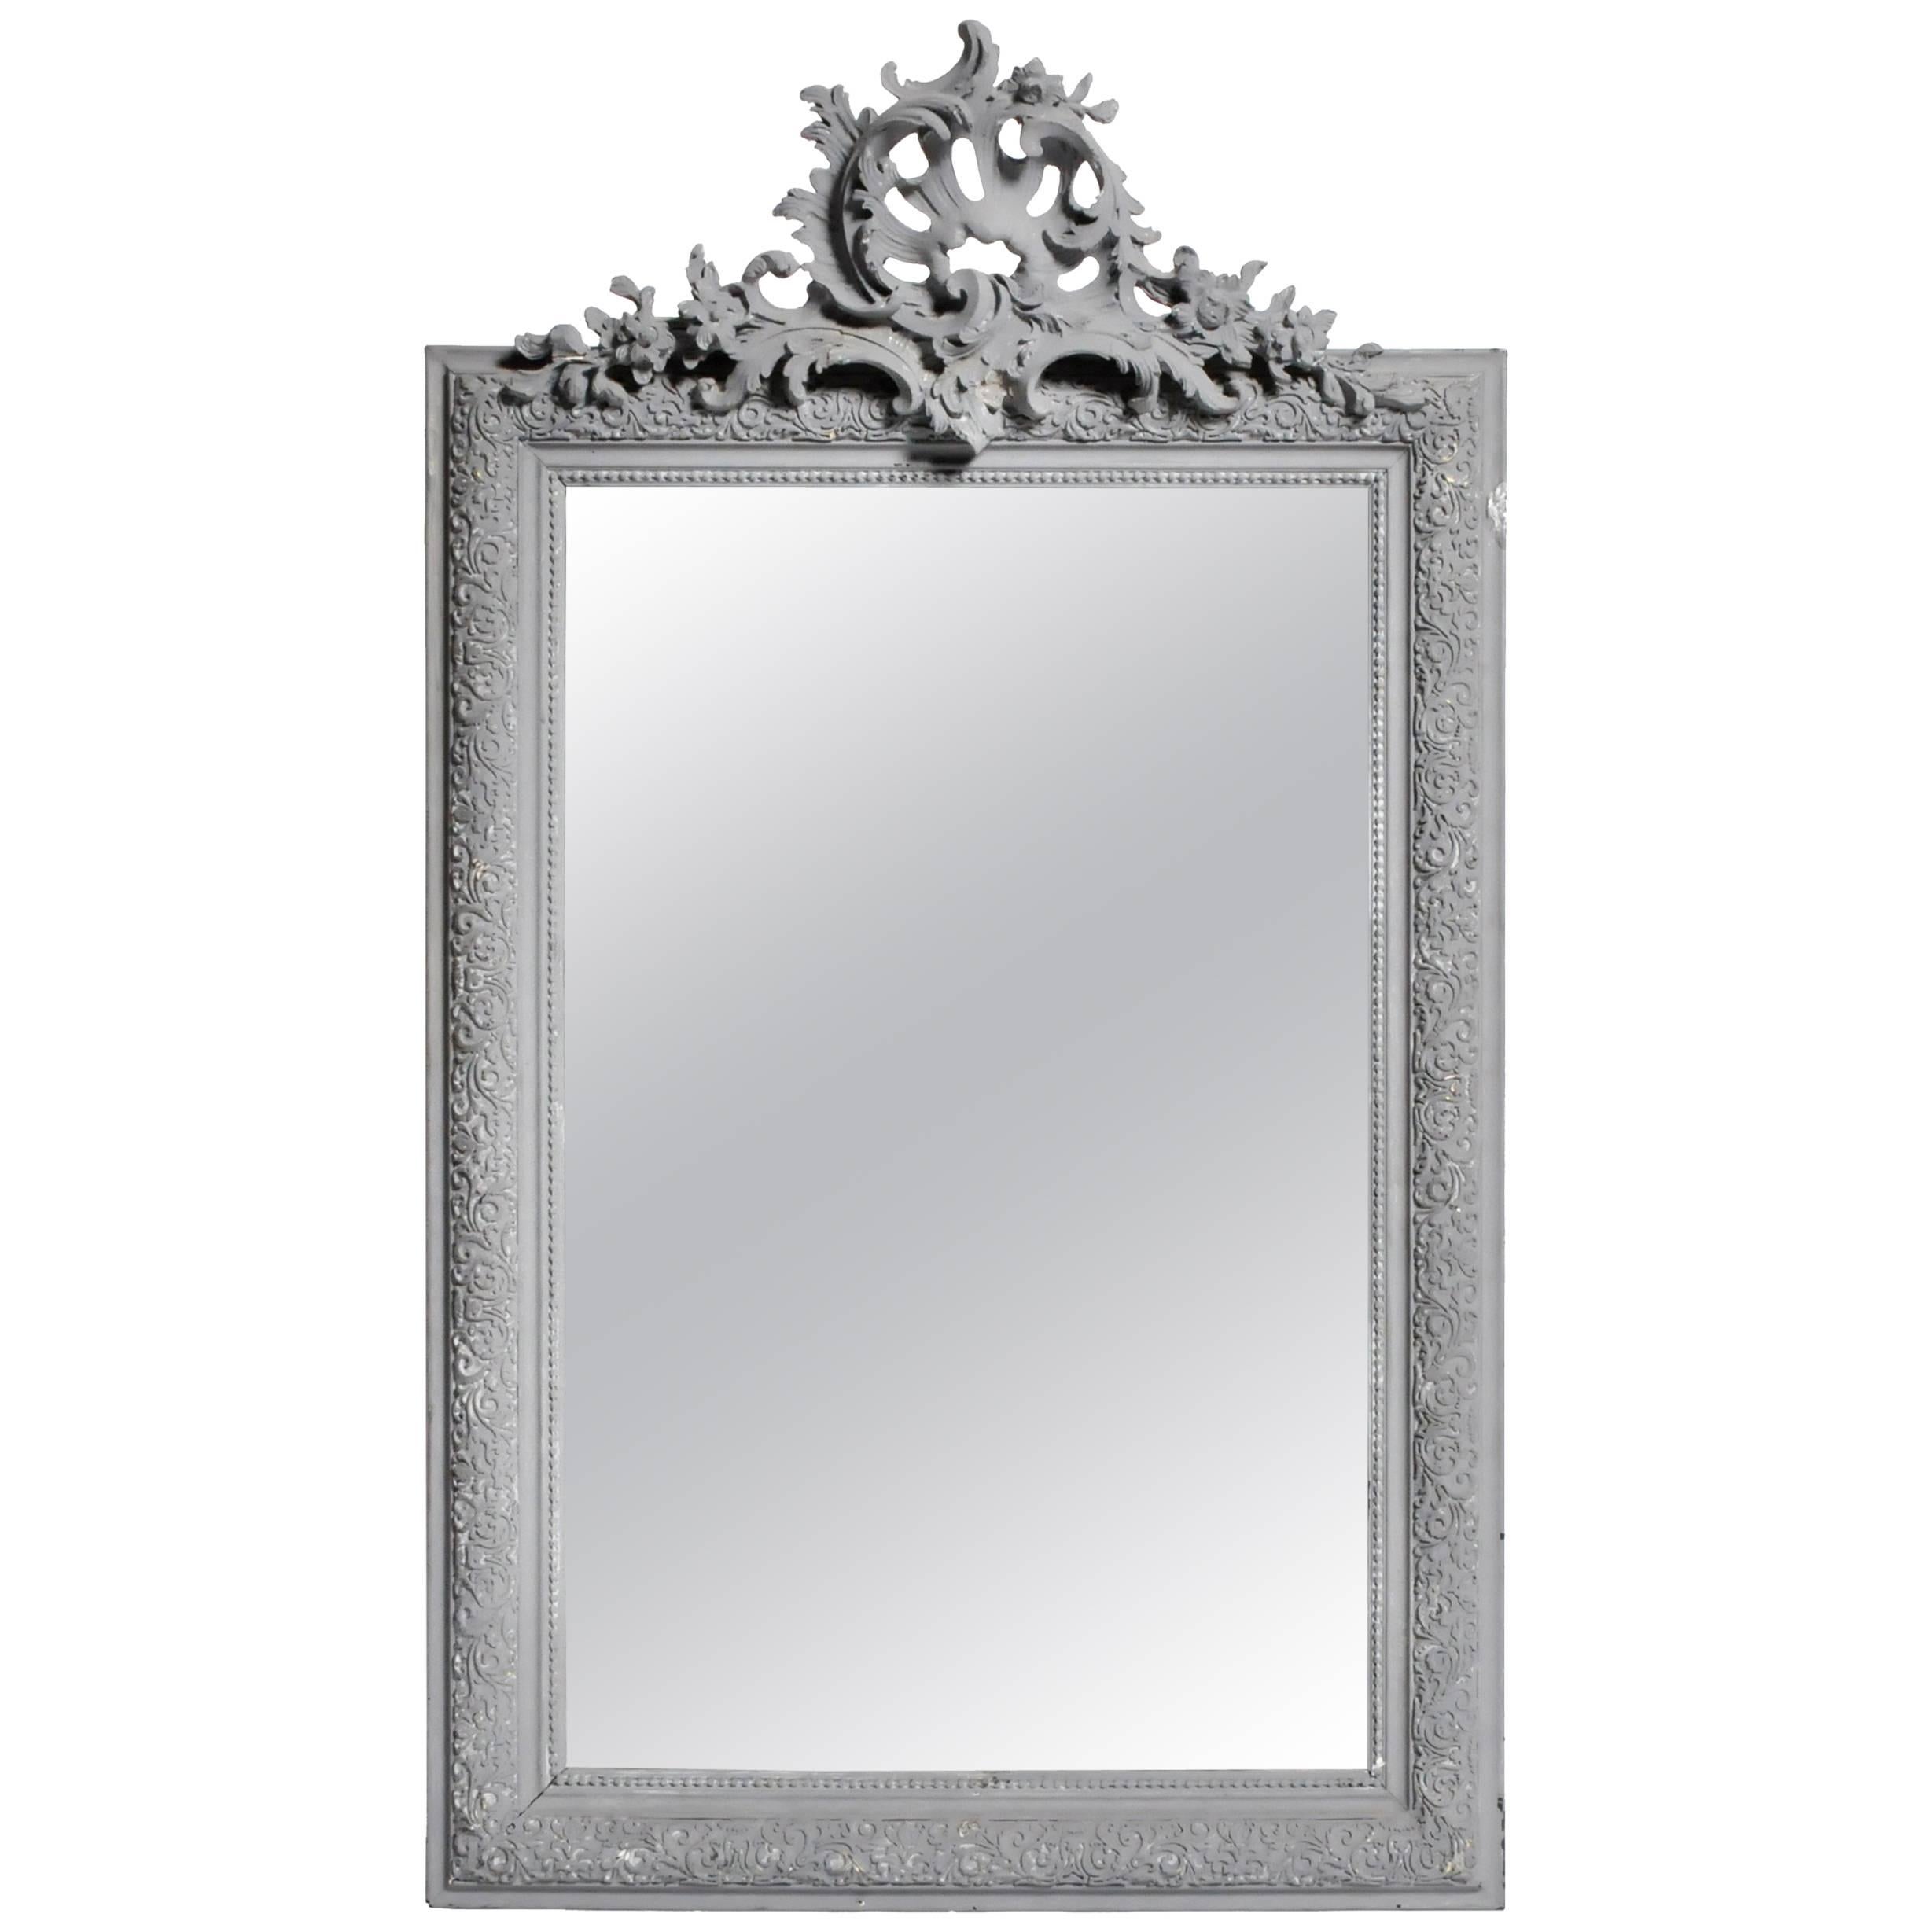 Napoleon III Style Mirror